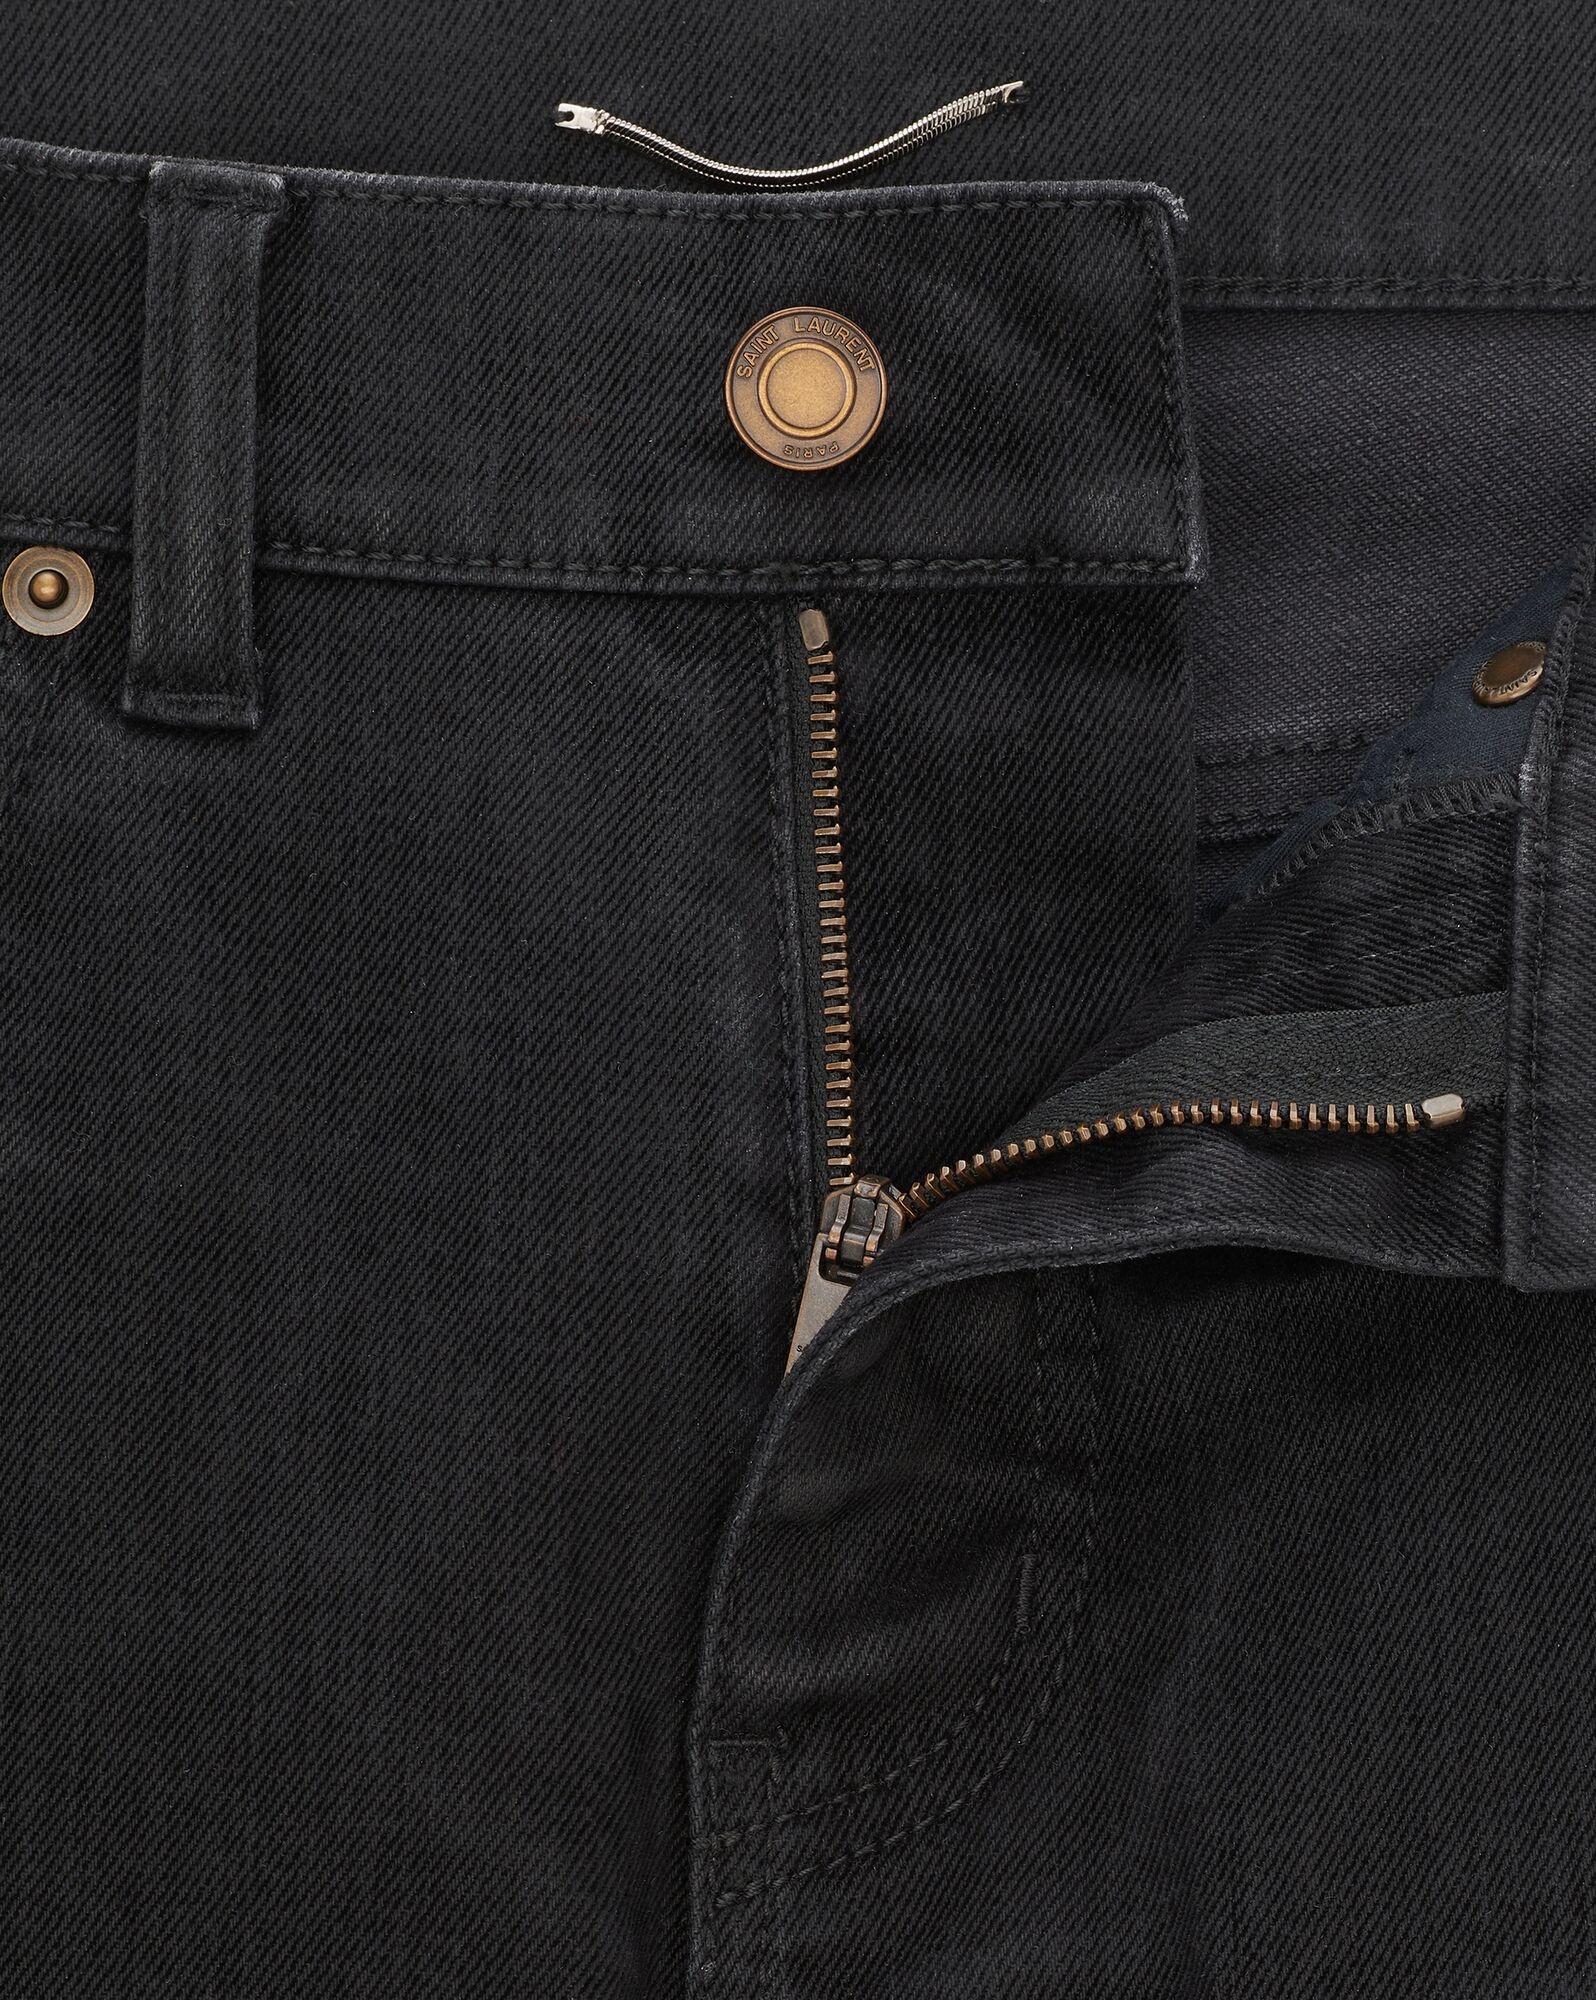 skinny jeans in light glazed black denim - 3